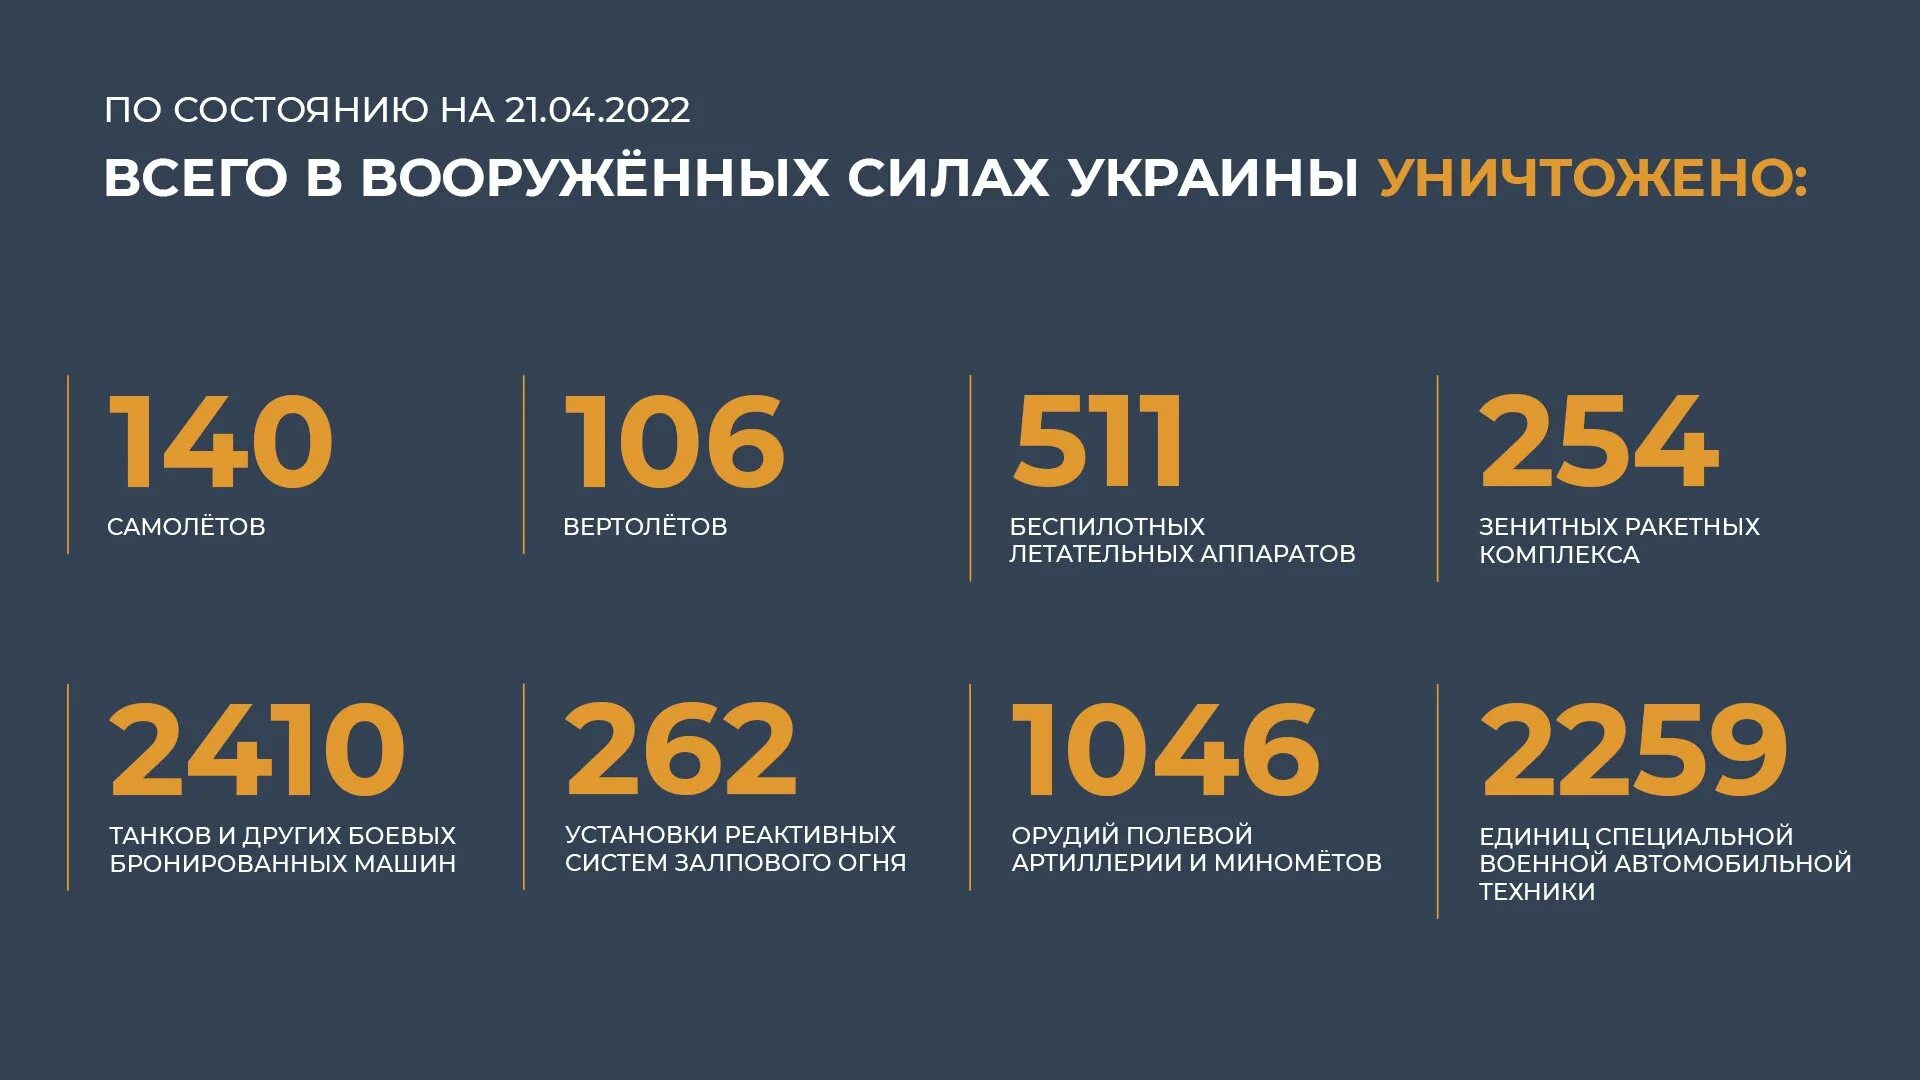 Потери Украины. Потери Украины на сегодня в цифрах. Потери Украины на Украине сегодня 2022. Общие потери России. 22 апрель 2020